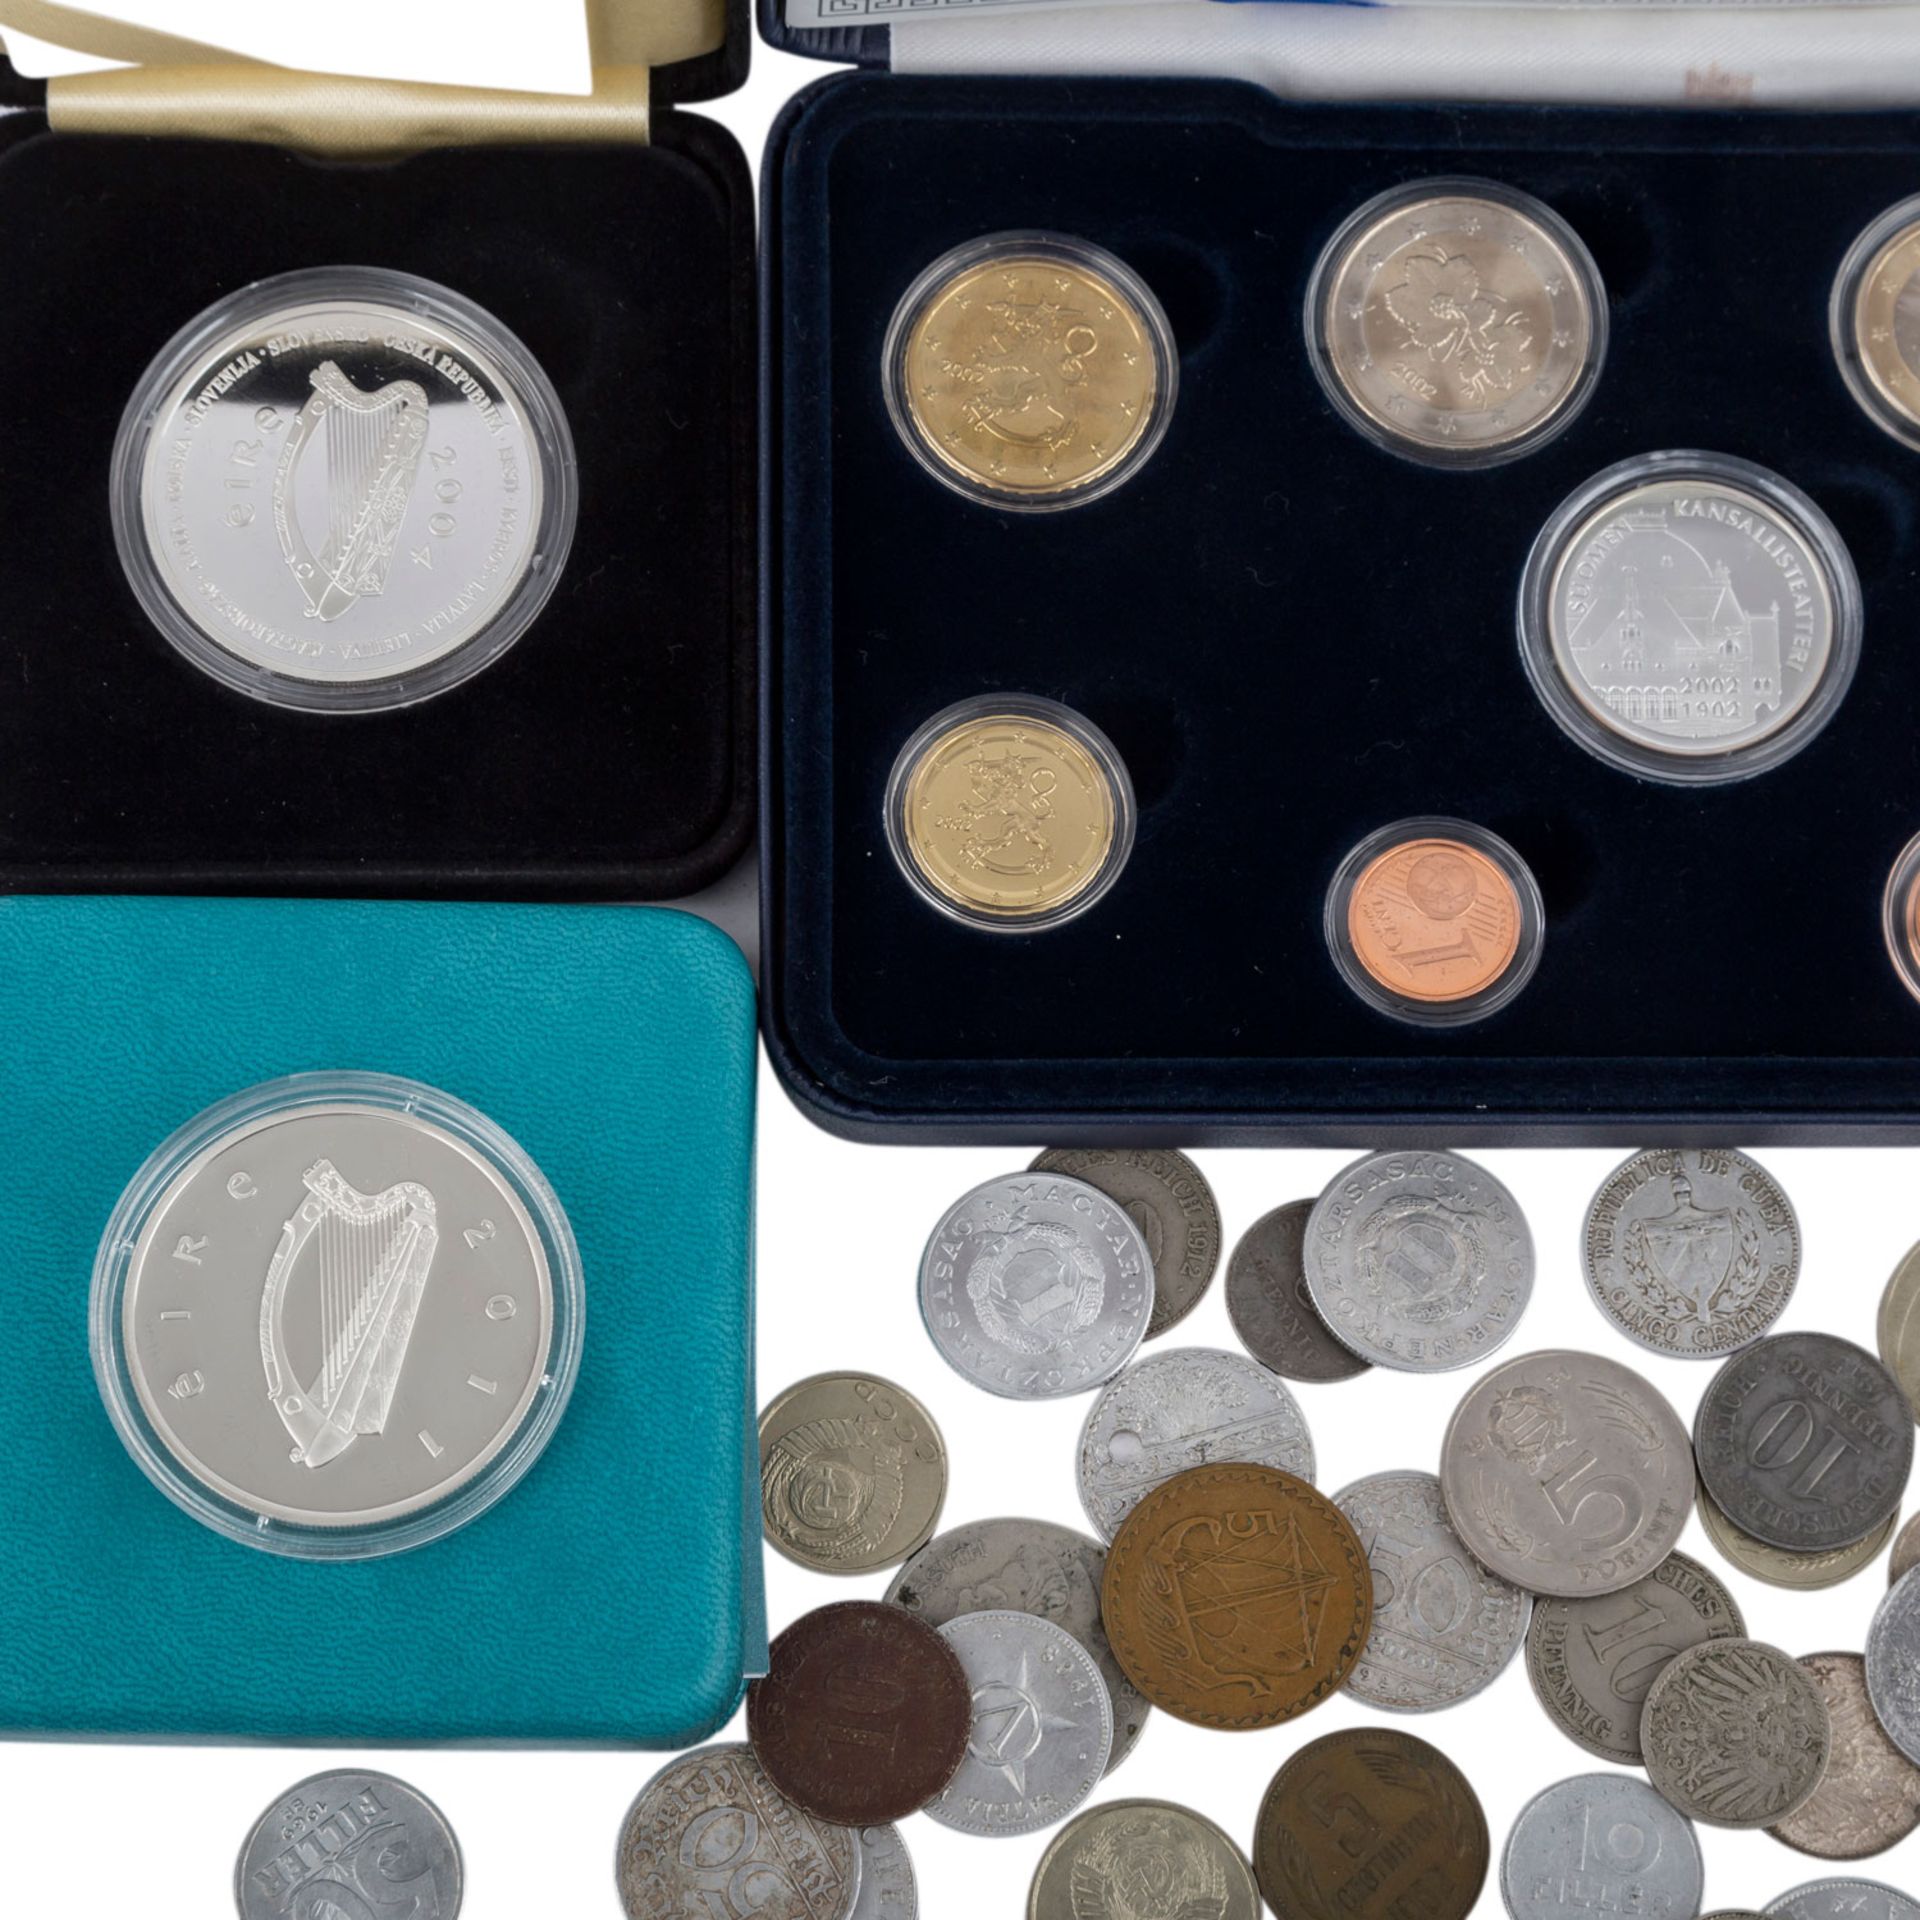 Restelot mit u.a. Prestige Kursmünzensatz Finnland 2002mit Medaille und 1 Cent bis 2 Euro Münzen, - Bild 2 aus 4